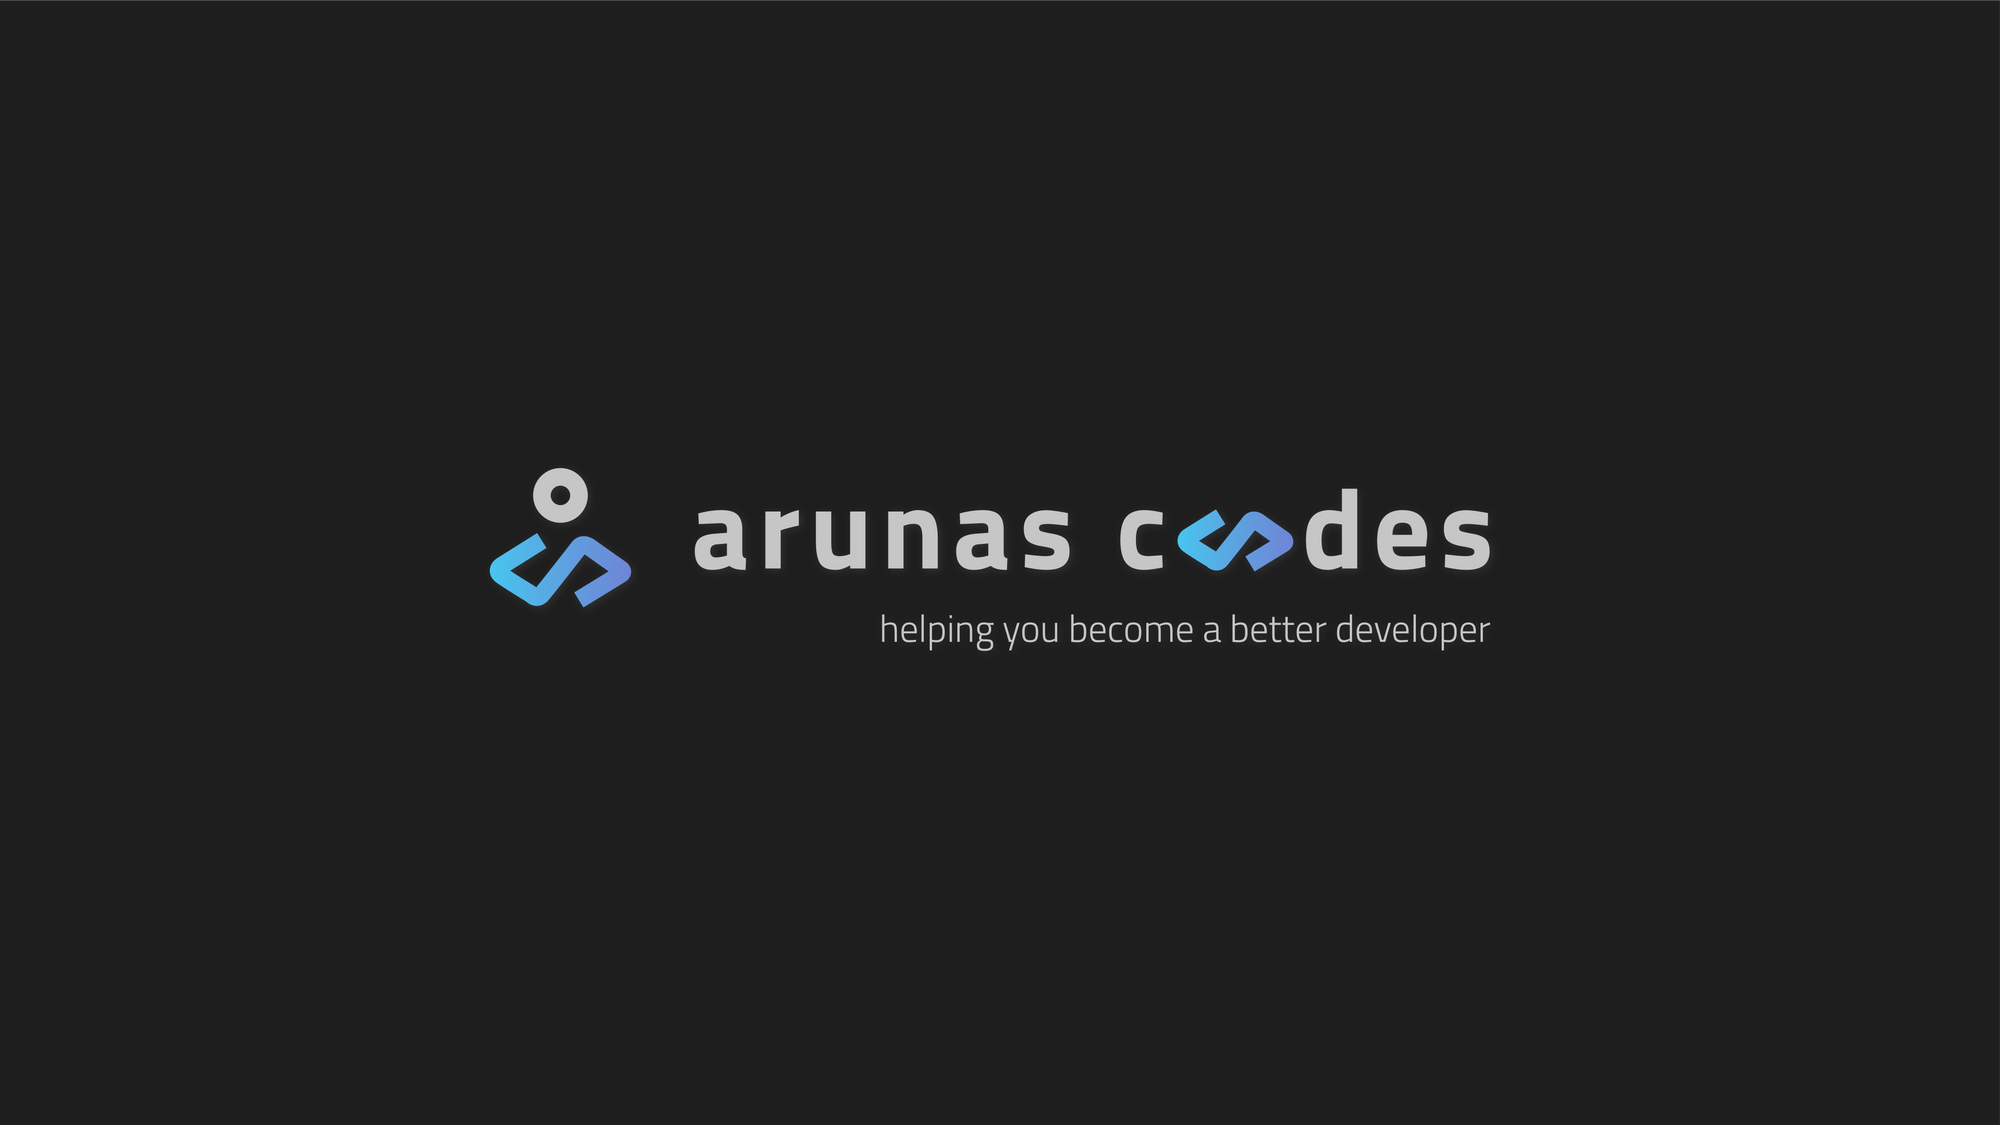 Arunas codes